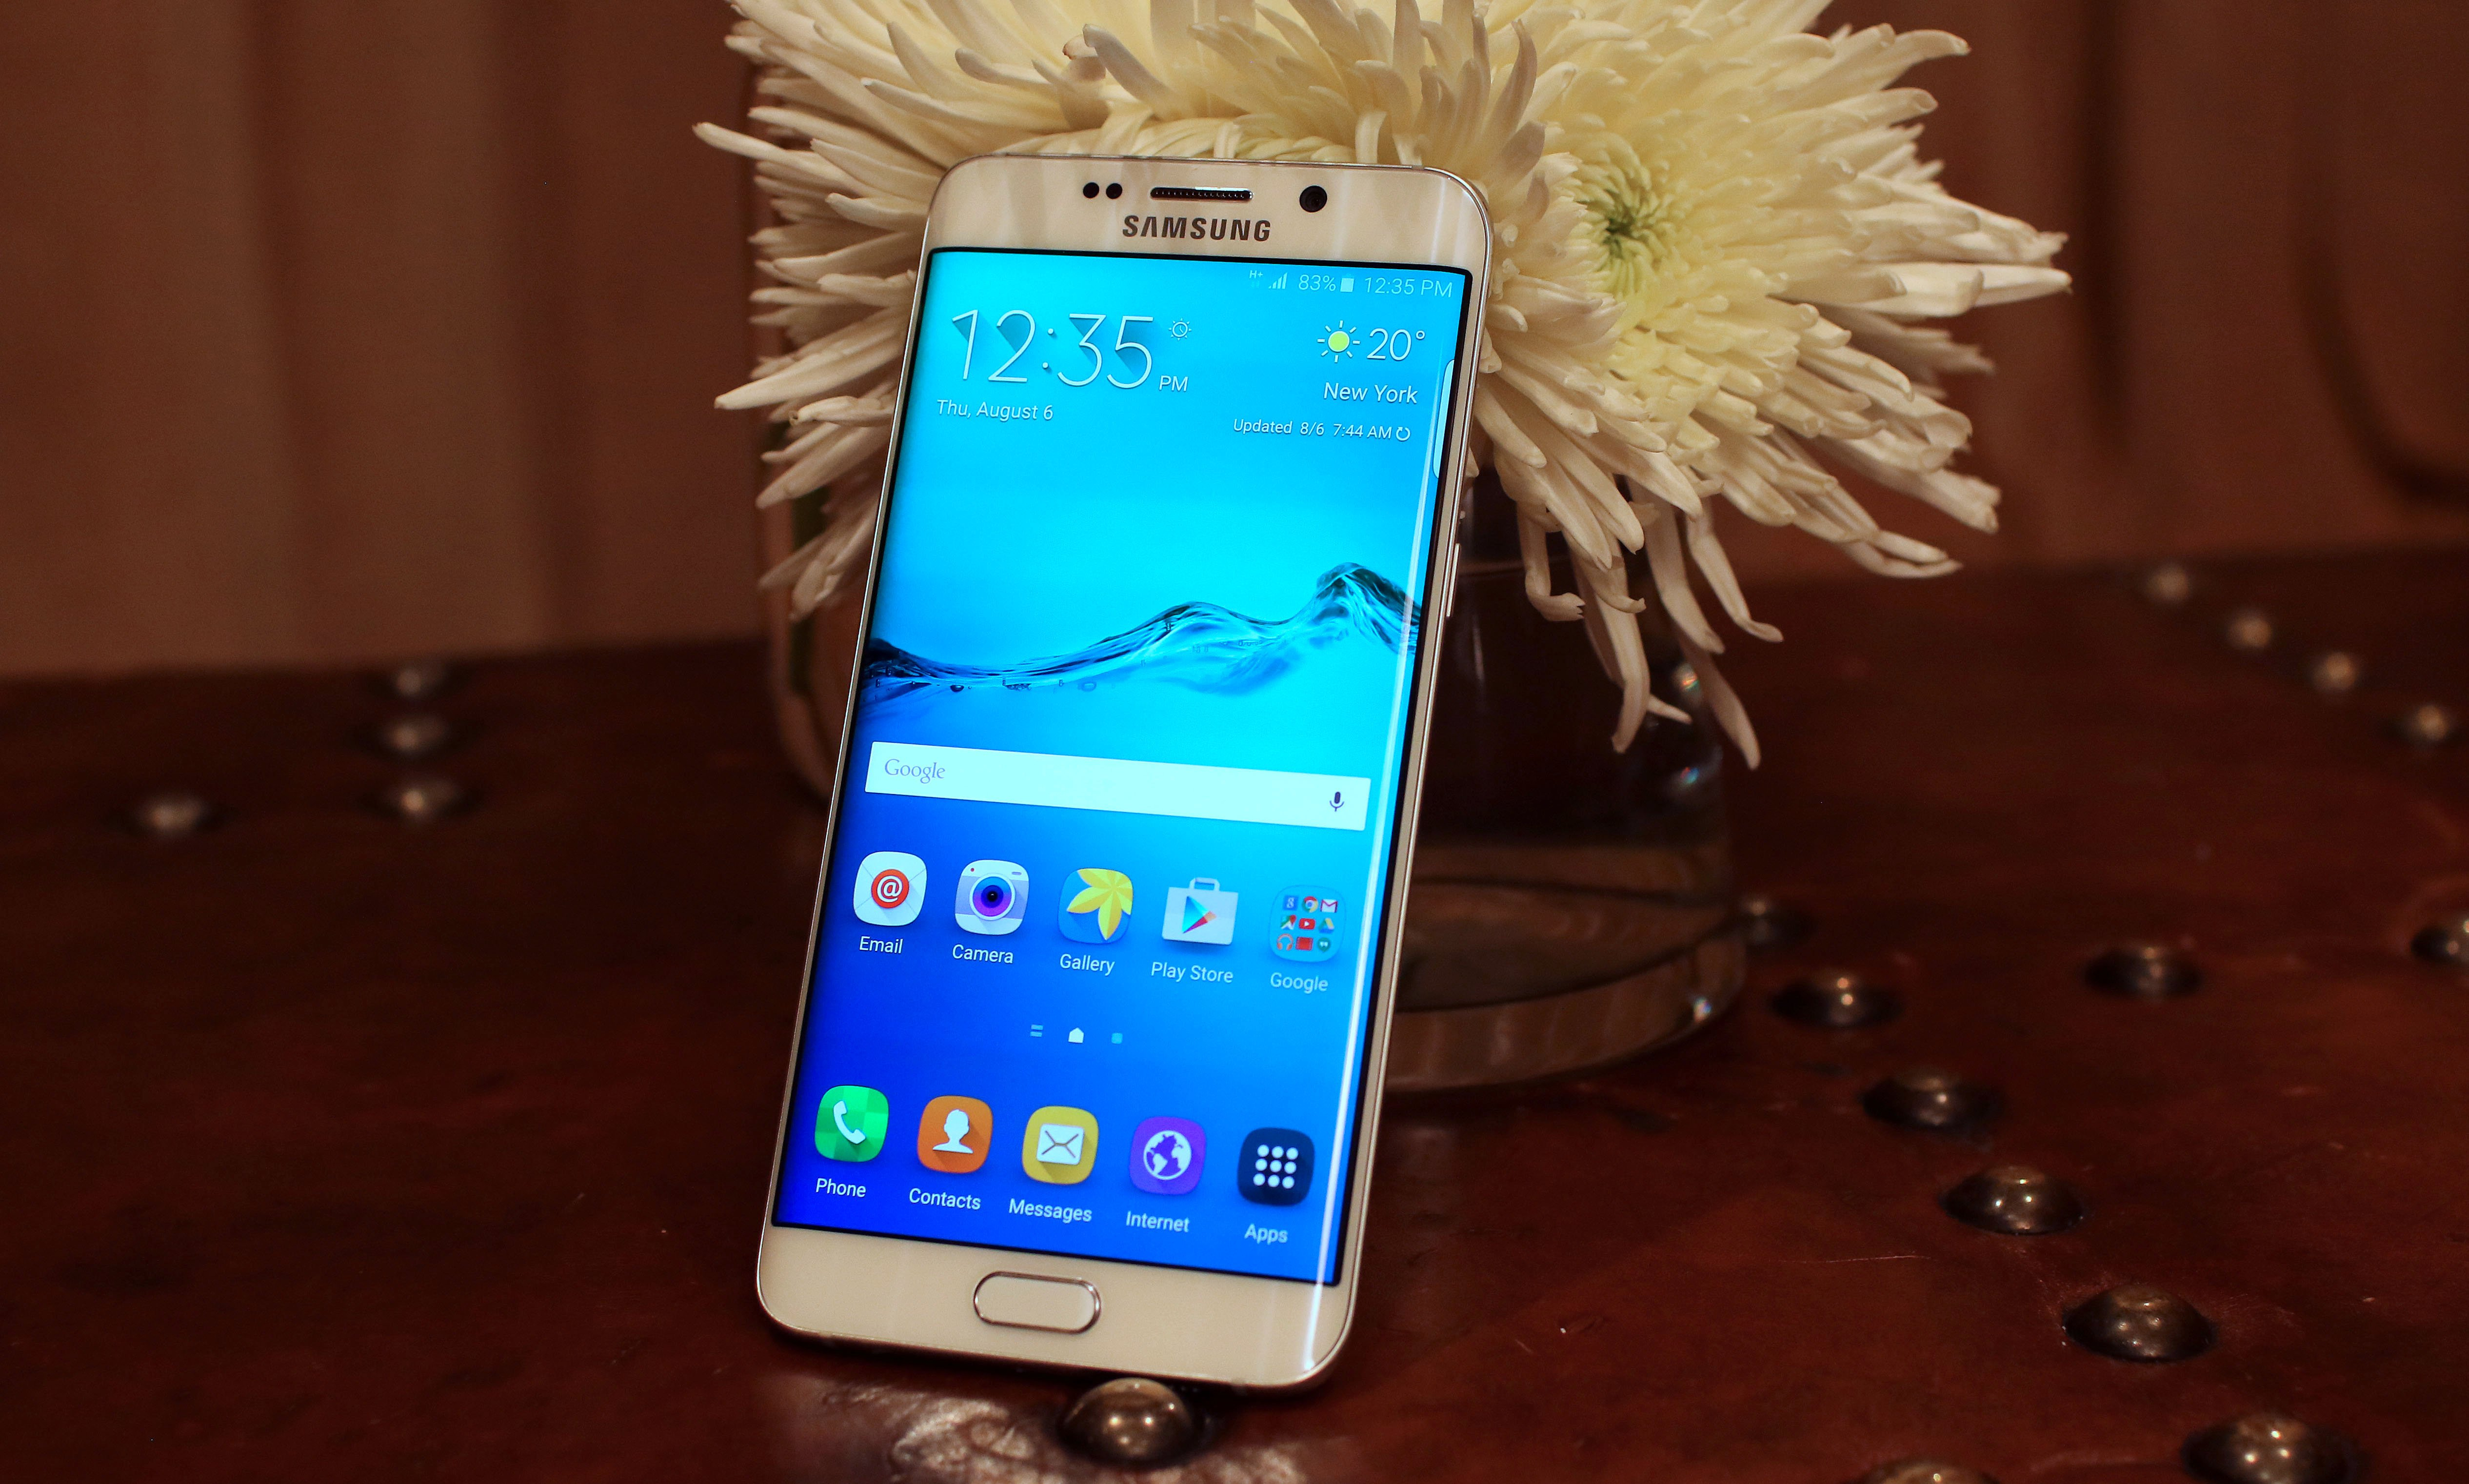 Samsung Galaxy S6 : Edge Vs Edge+, Les 5 Différences dedans Les 5 Differences